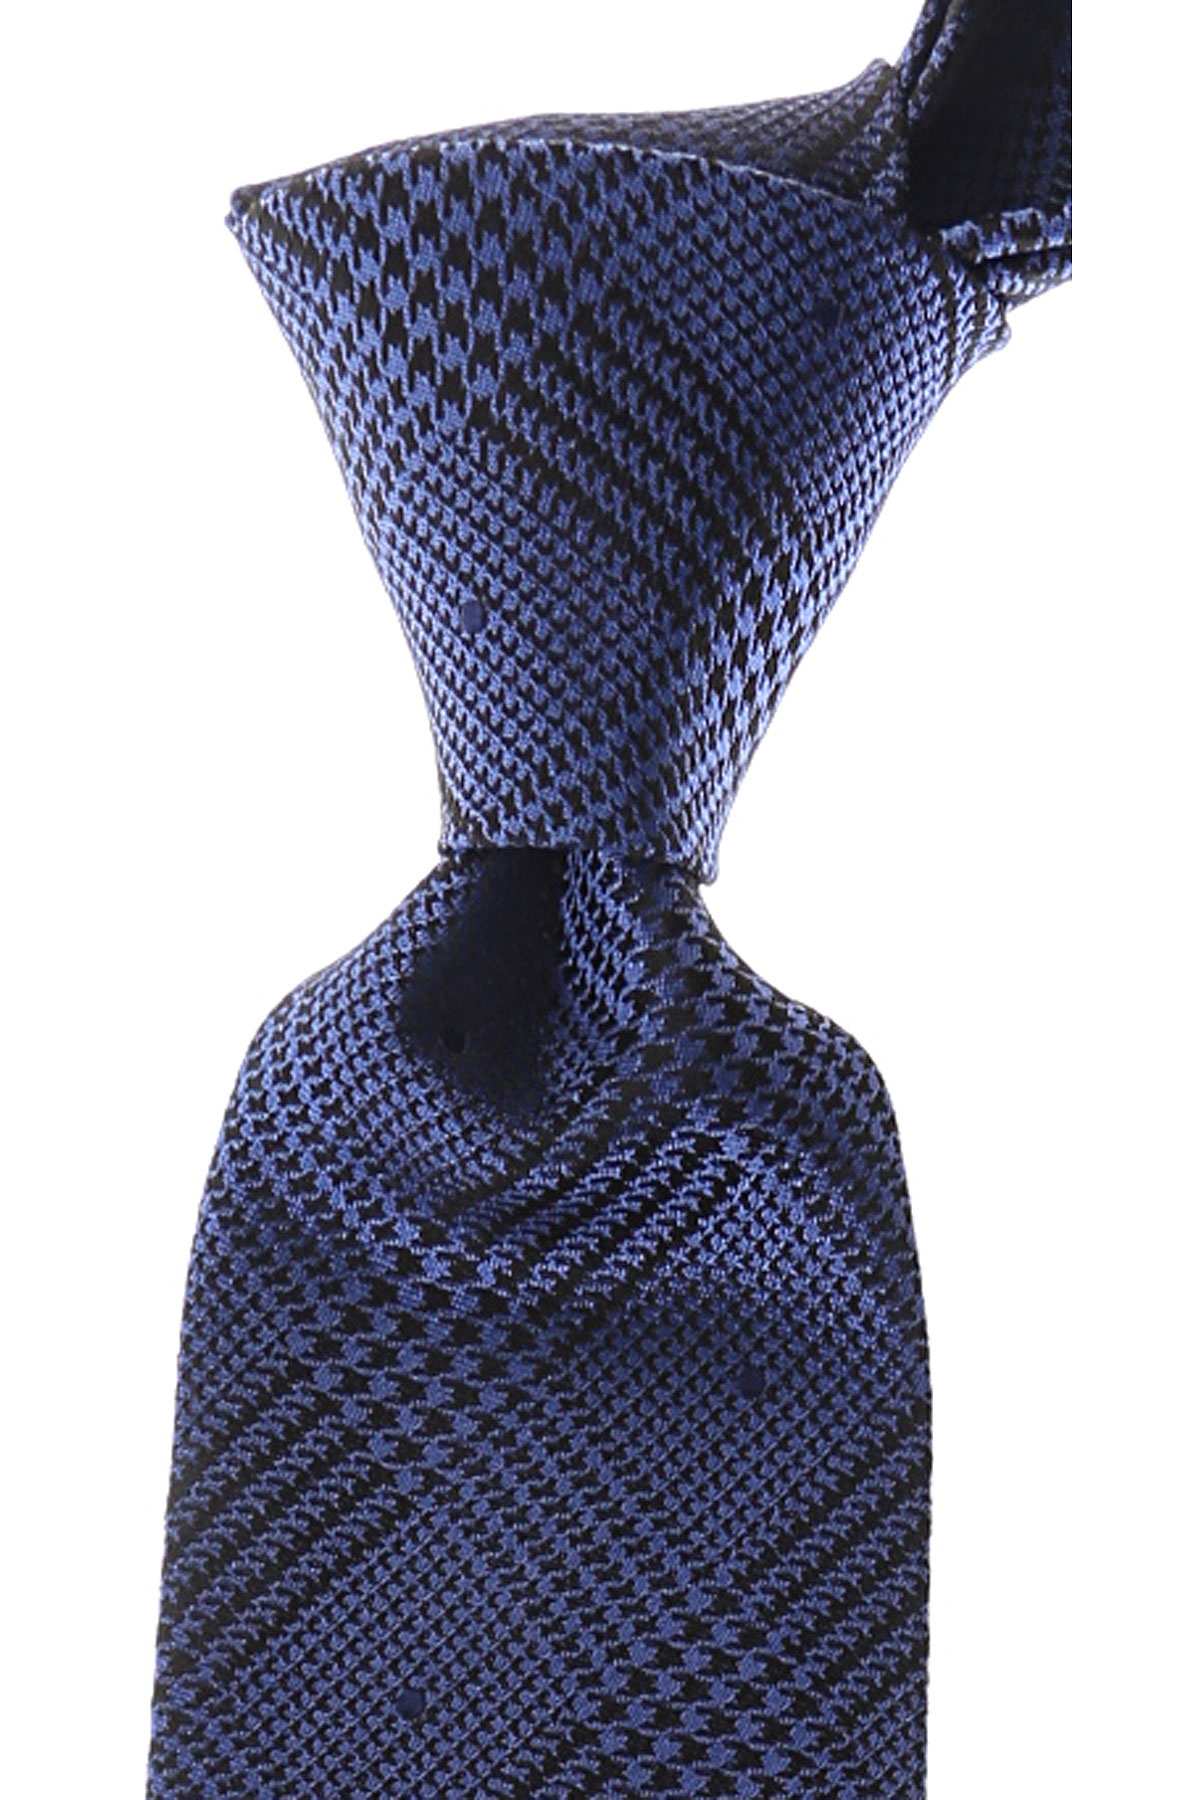 Cravates Gianni Versace , Bleu violet, Soie, 2017